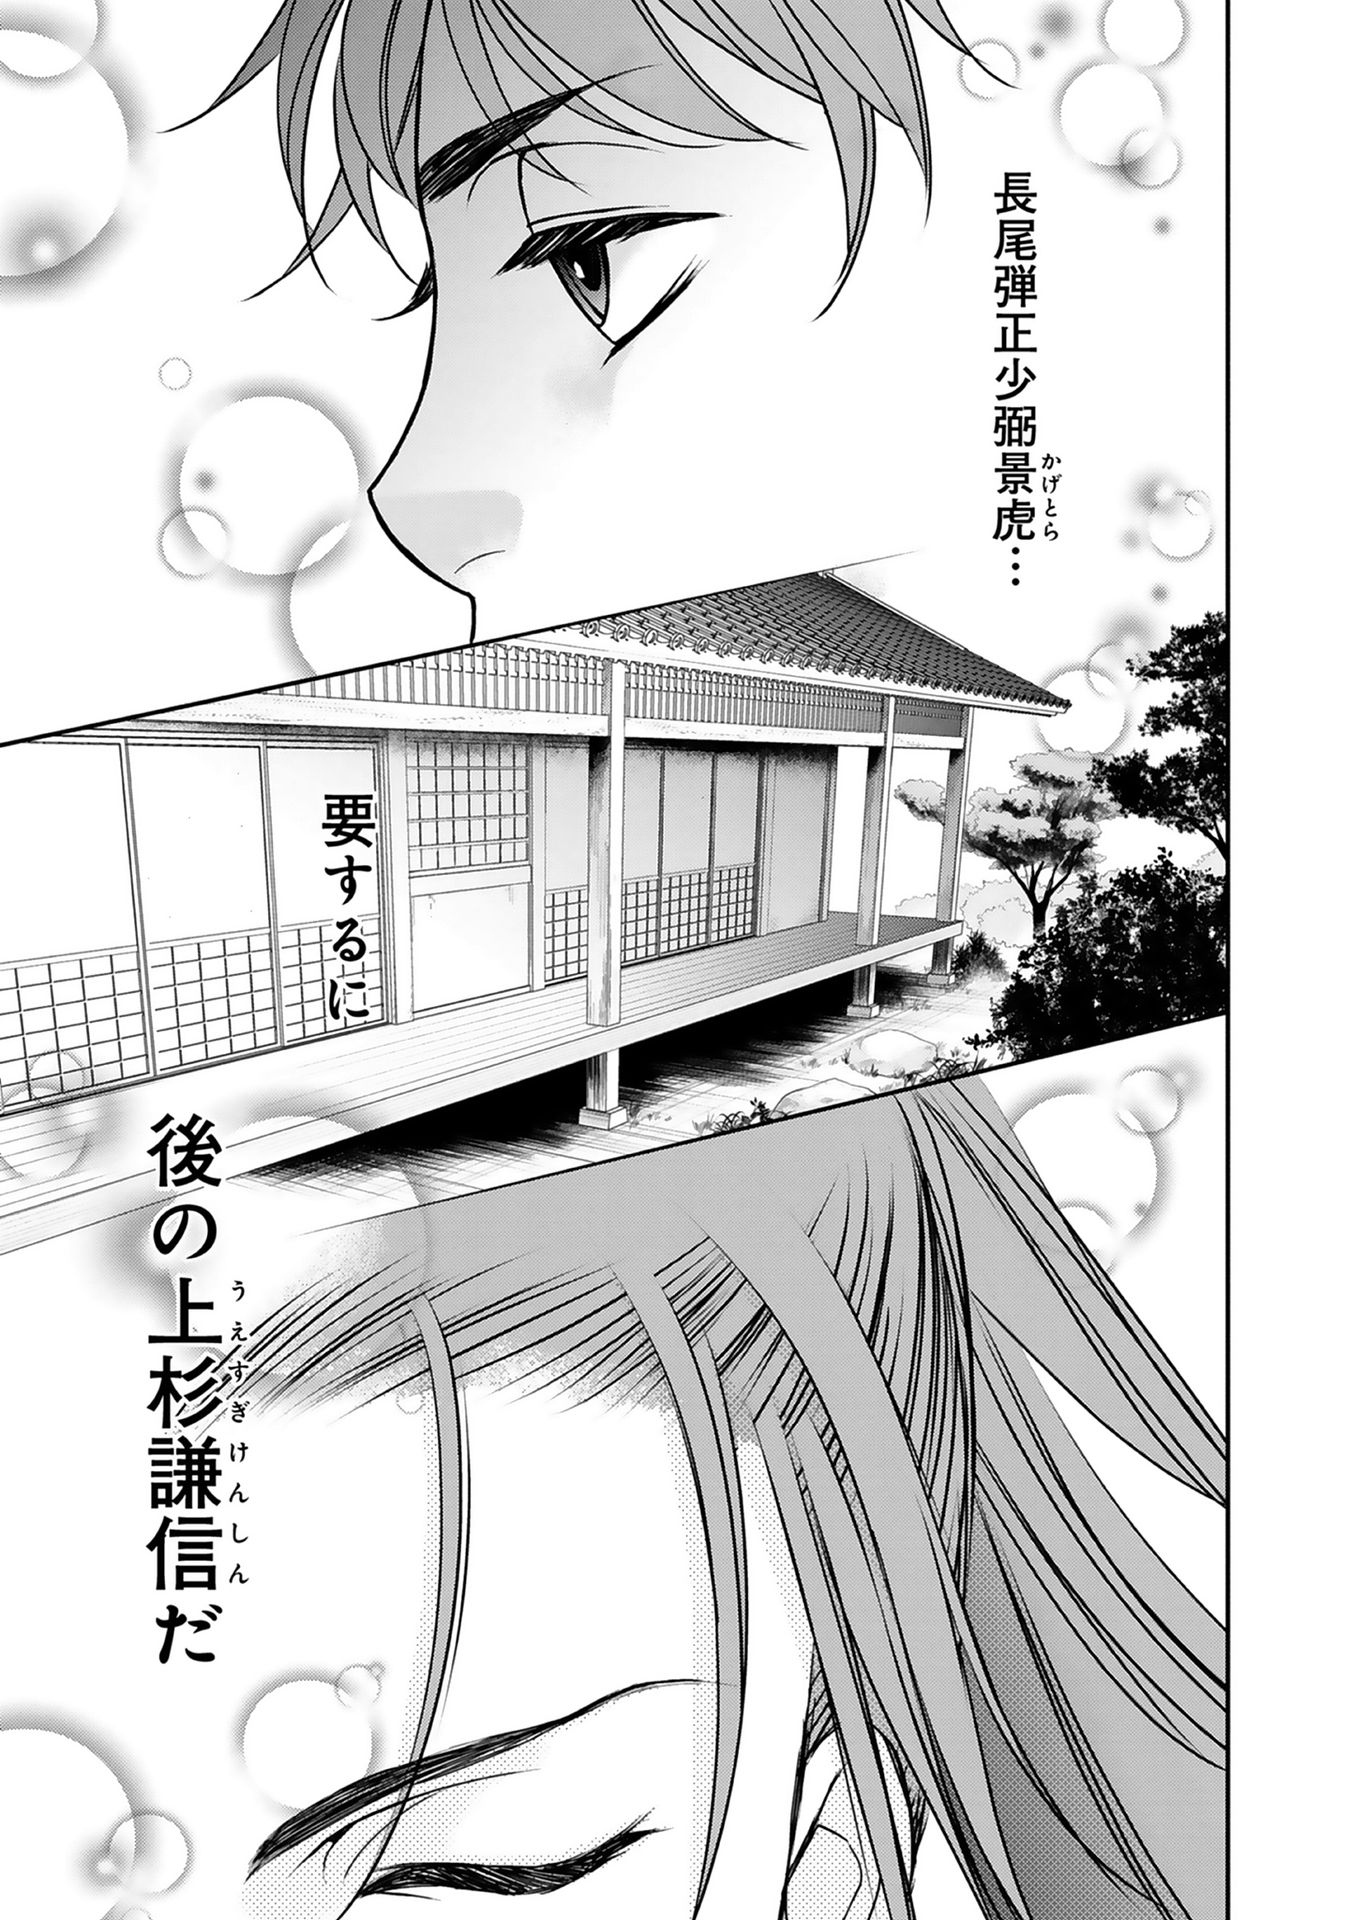 Afumi no Umi – Minamo ga Yureru Toki - Chapter 1 - Page 40